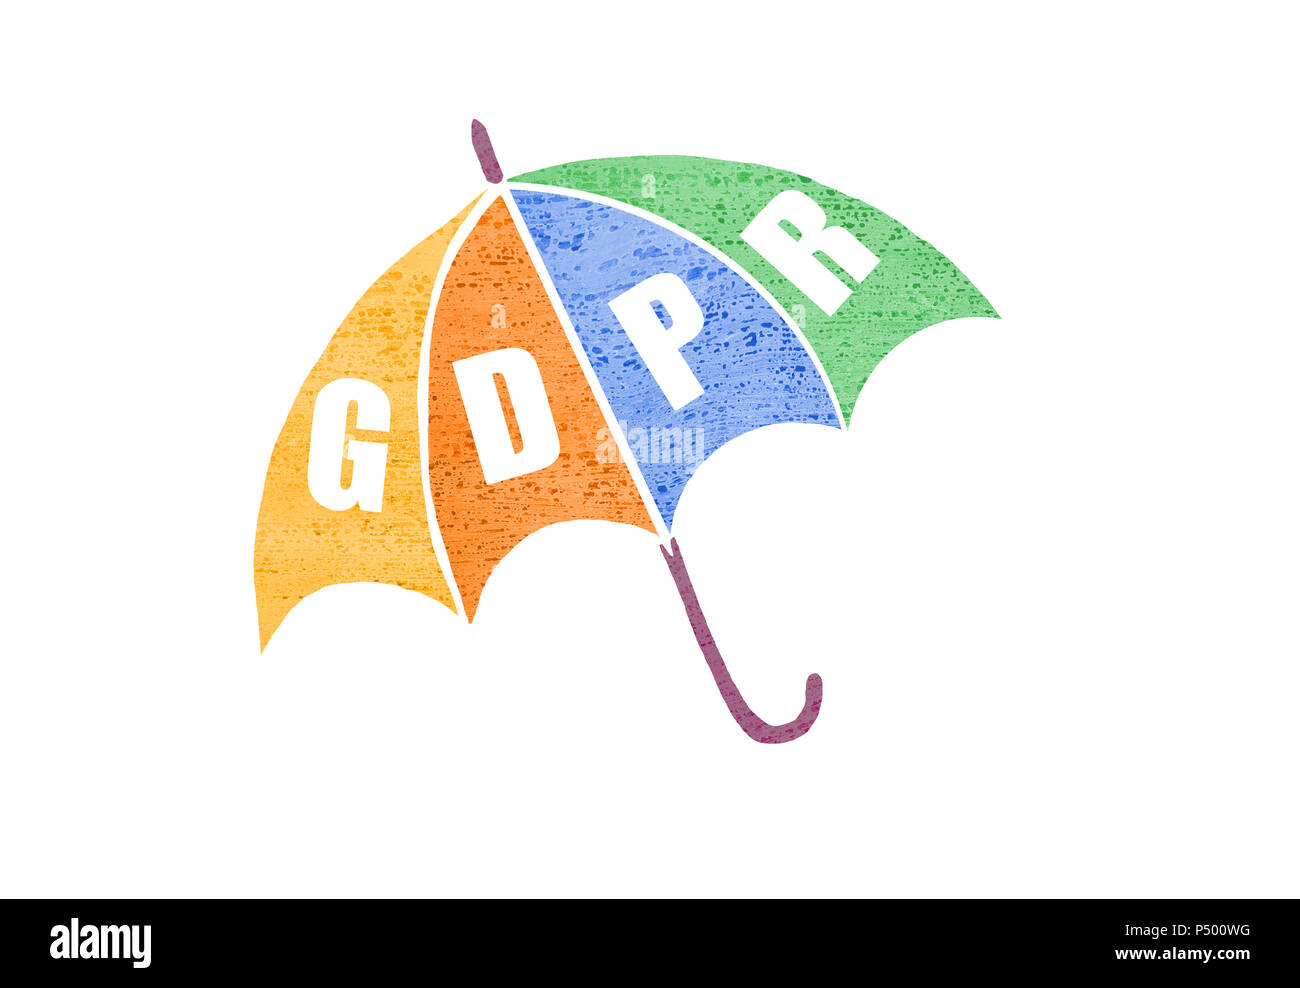 Pibr concept illustration. Règlement général sur la protection des données abréviation - PIBR - sur un parapluie comme un symbole de la protection de la vie privée. Banque D'Images